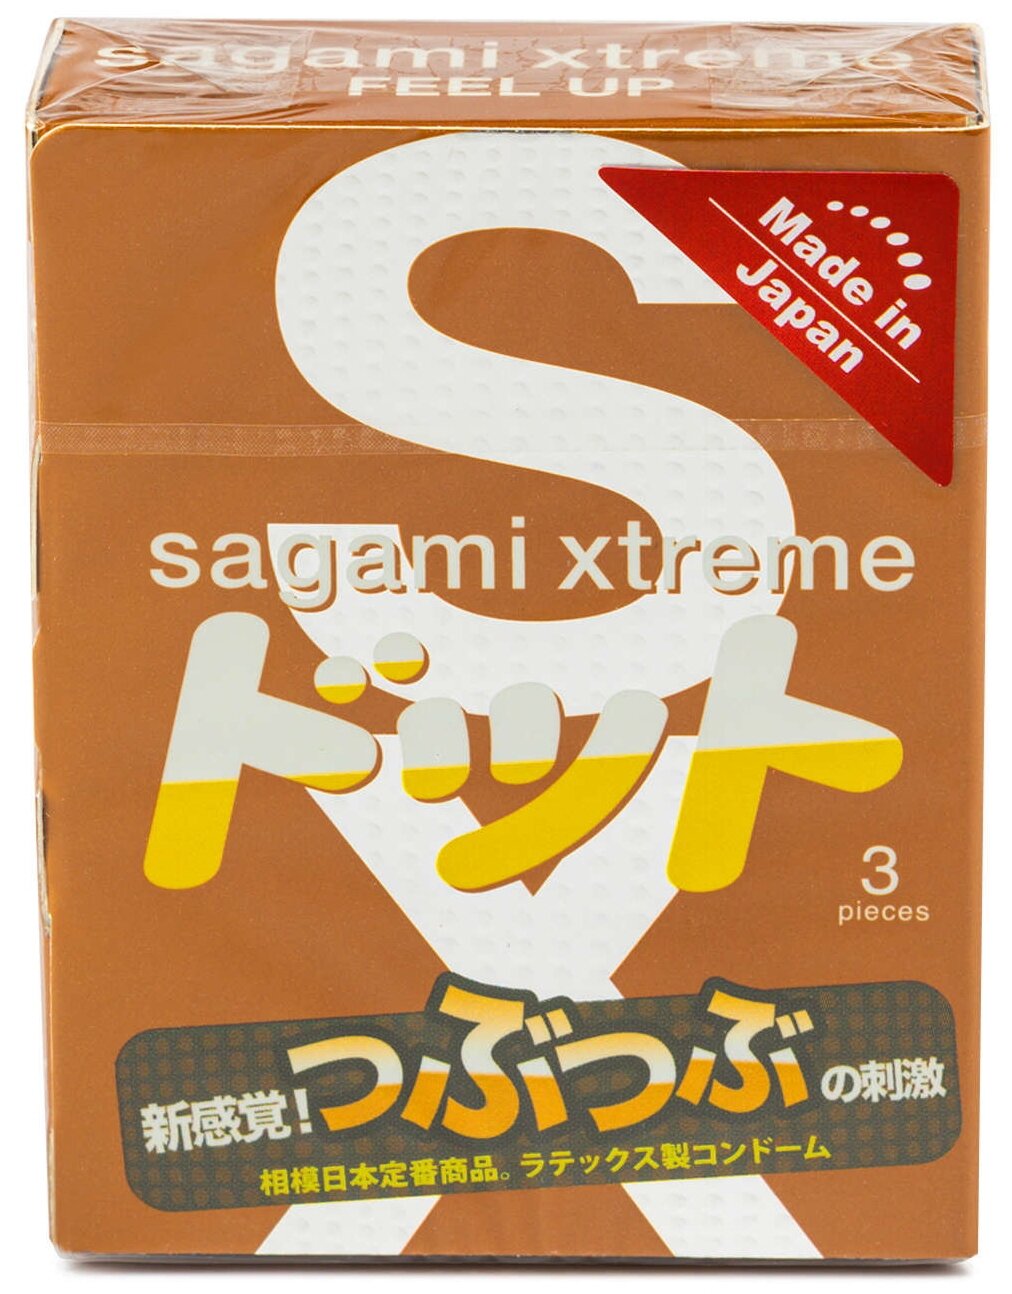 Гладкие SAGAMI Xtreme Feel UP 3шт. Презервативы усиливающие ощущения, латекс 0,06 мм